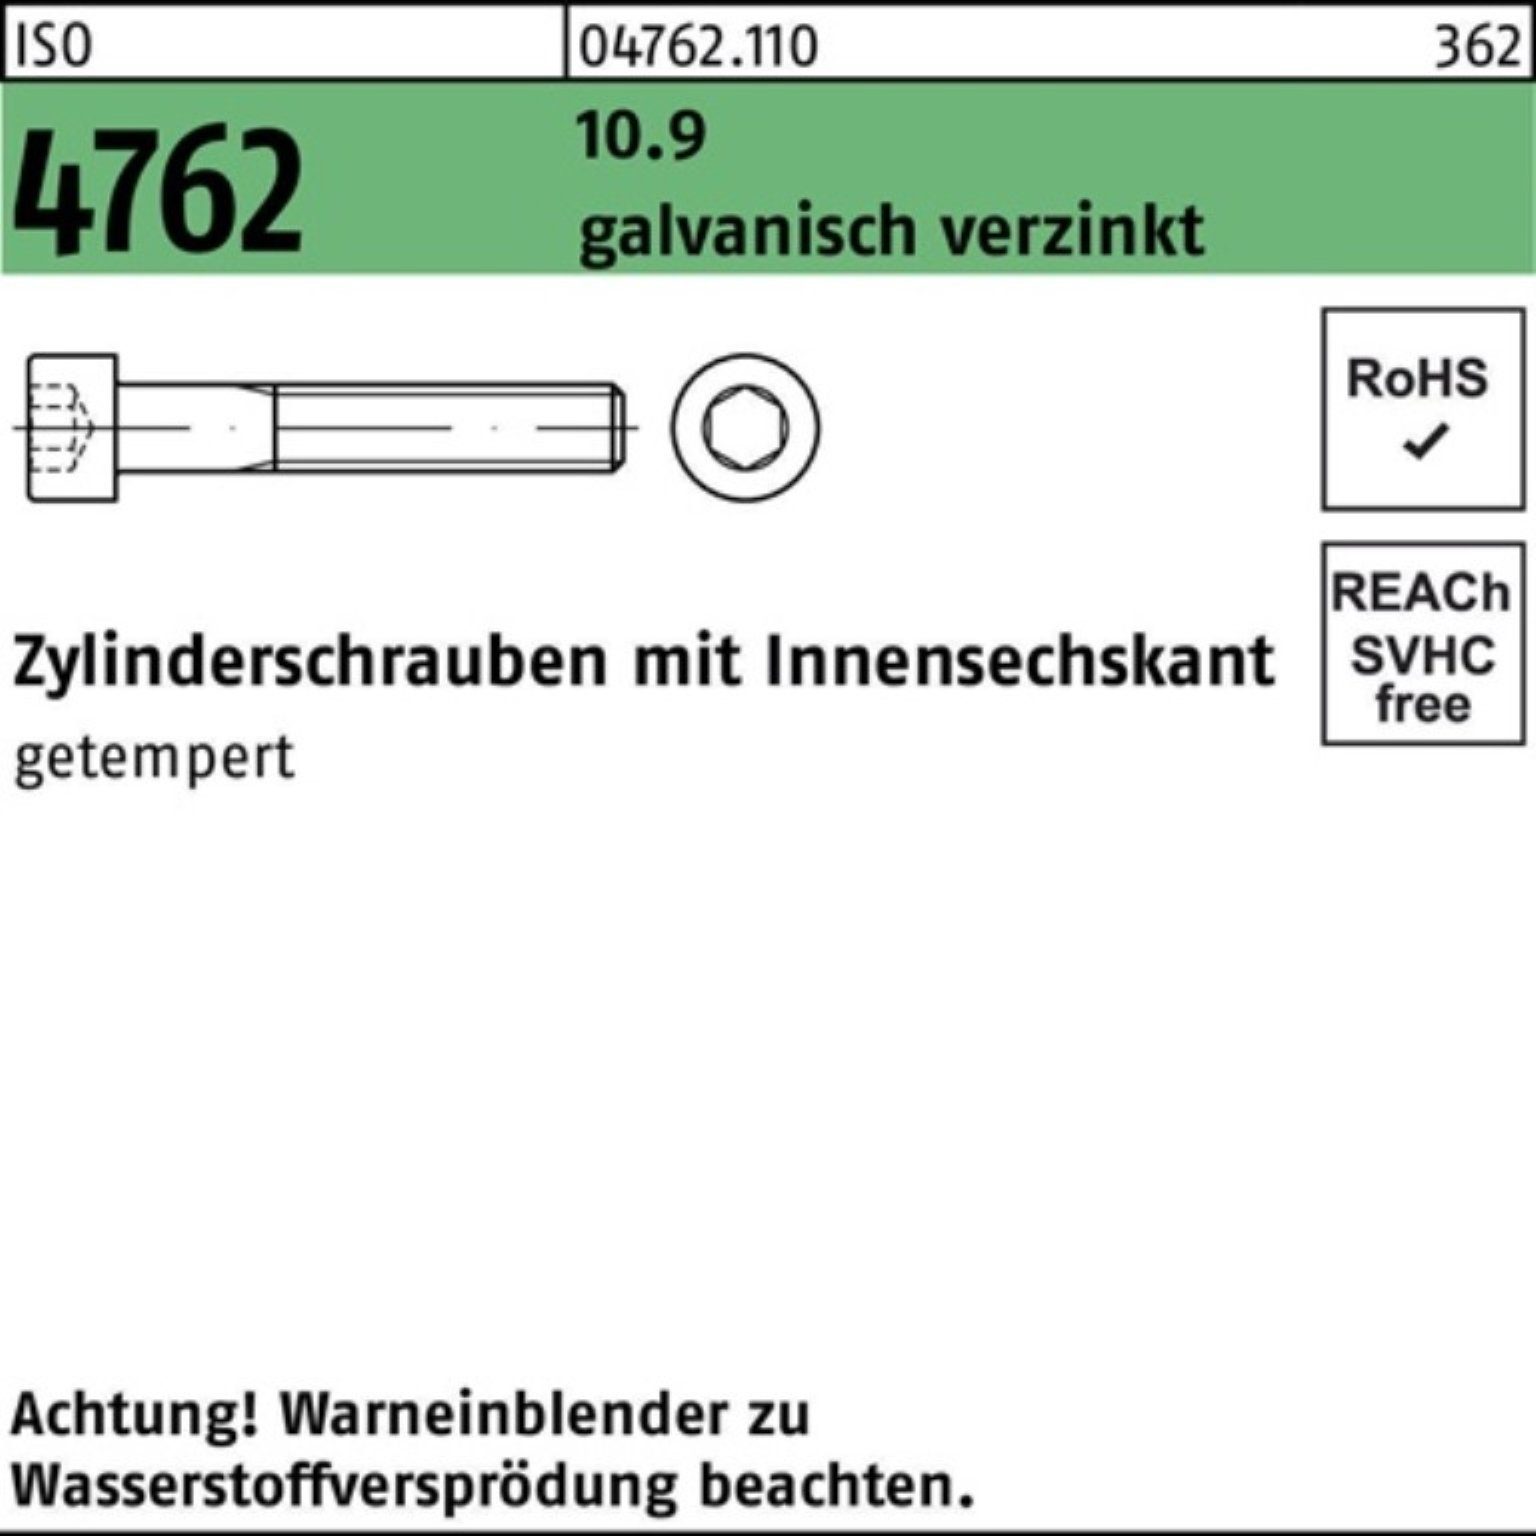 Zylinderschraube 200er 10.9 ISO Zylinderschraube galv.verz. Innen-6kt 4762 M8x40 2 Pack Reyher